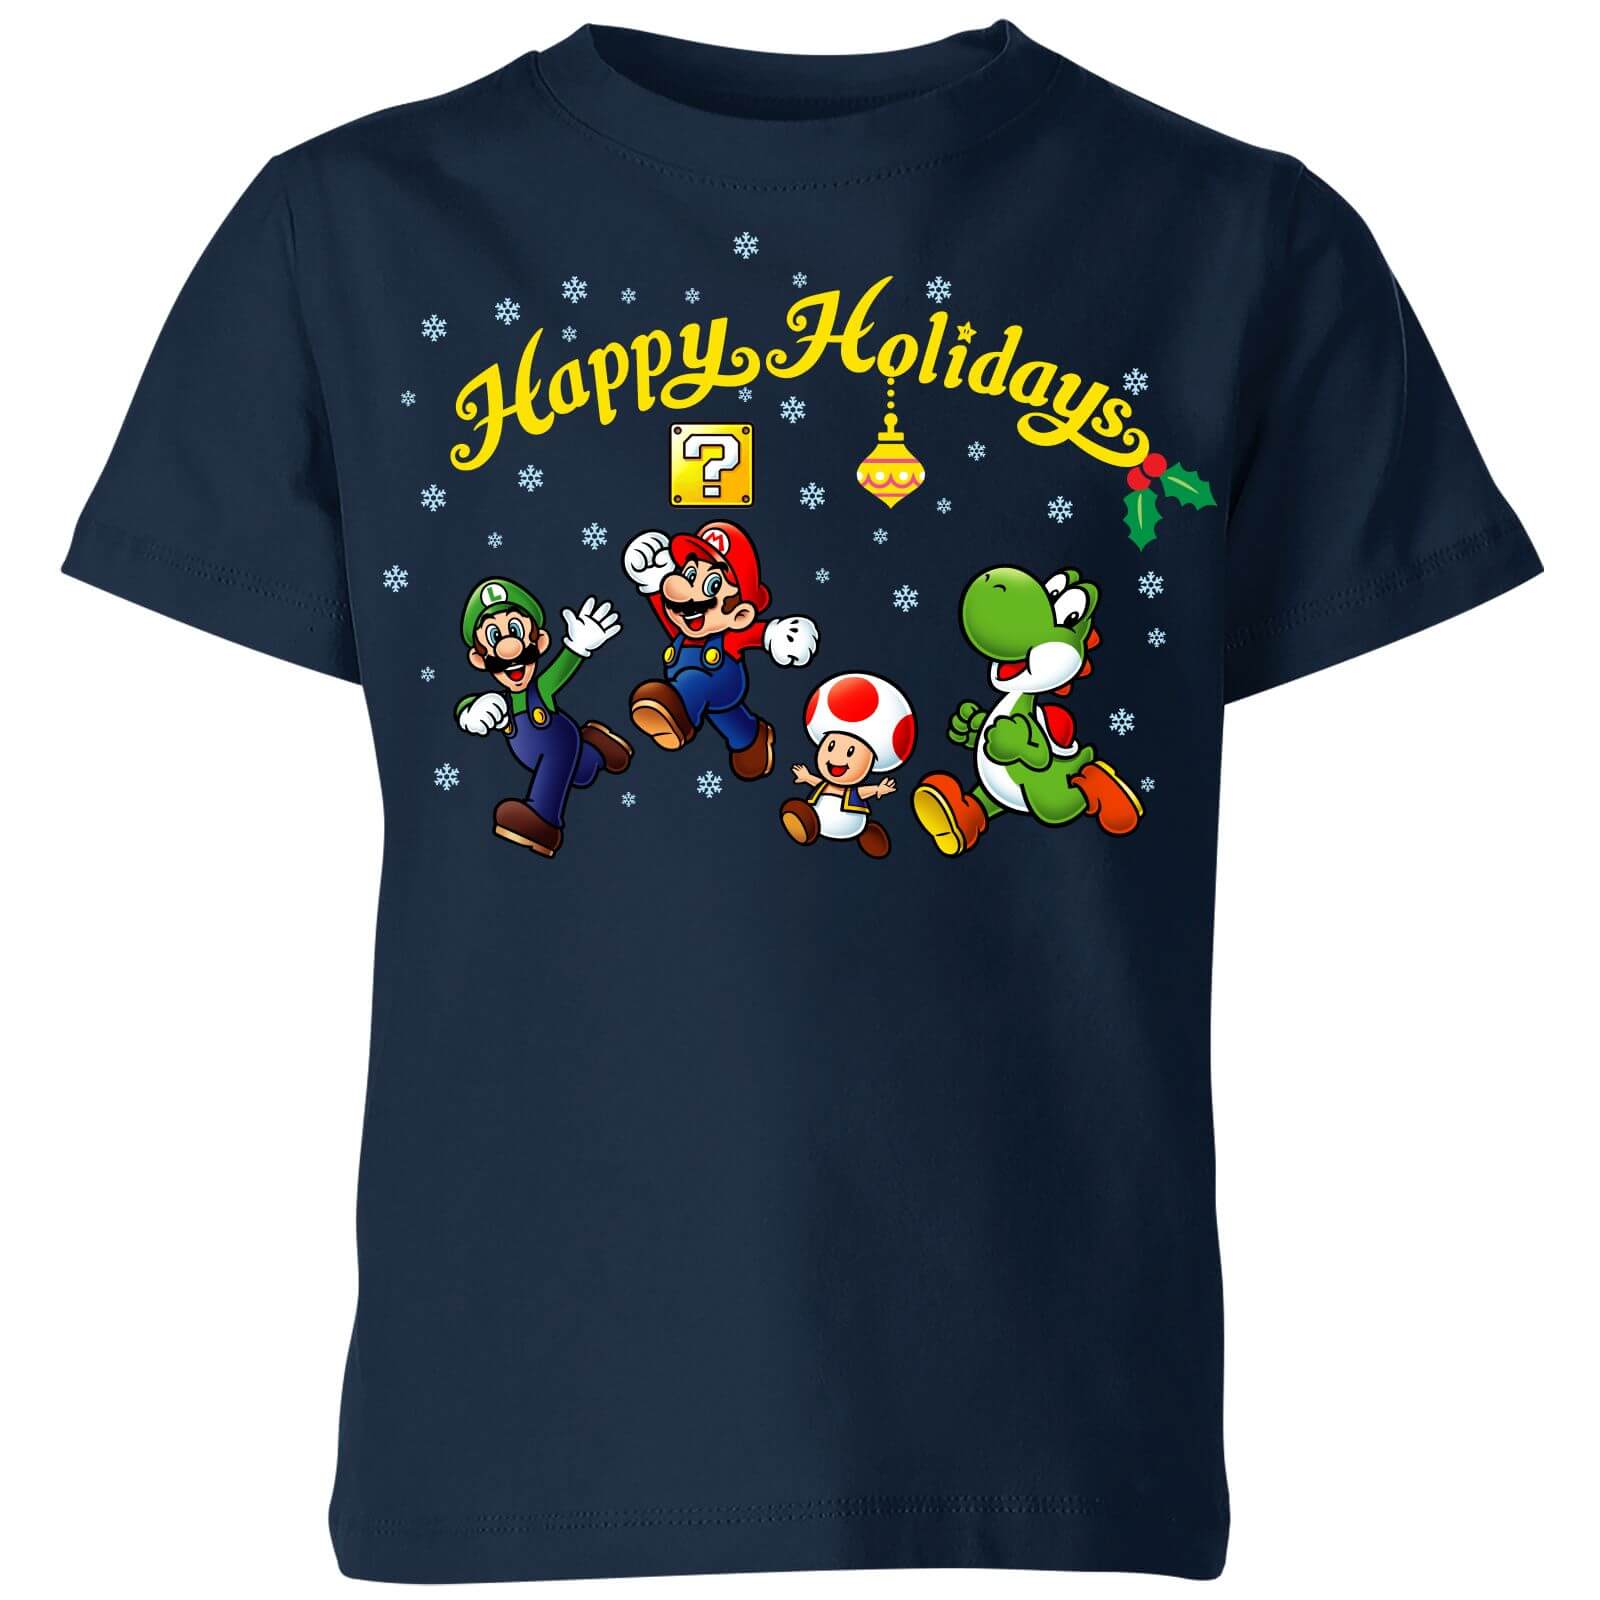 Nintendo Super Mario Good Guys Happy Holidays Kids' Christmas T-Shirt - Navy - 3-4 Years